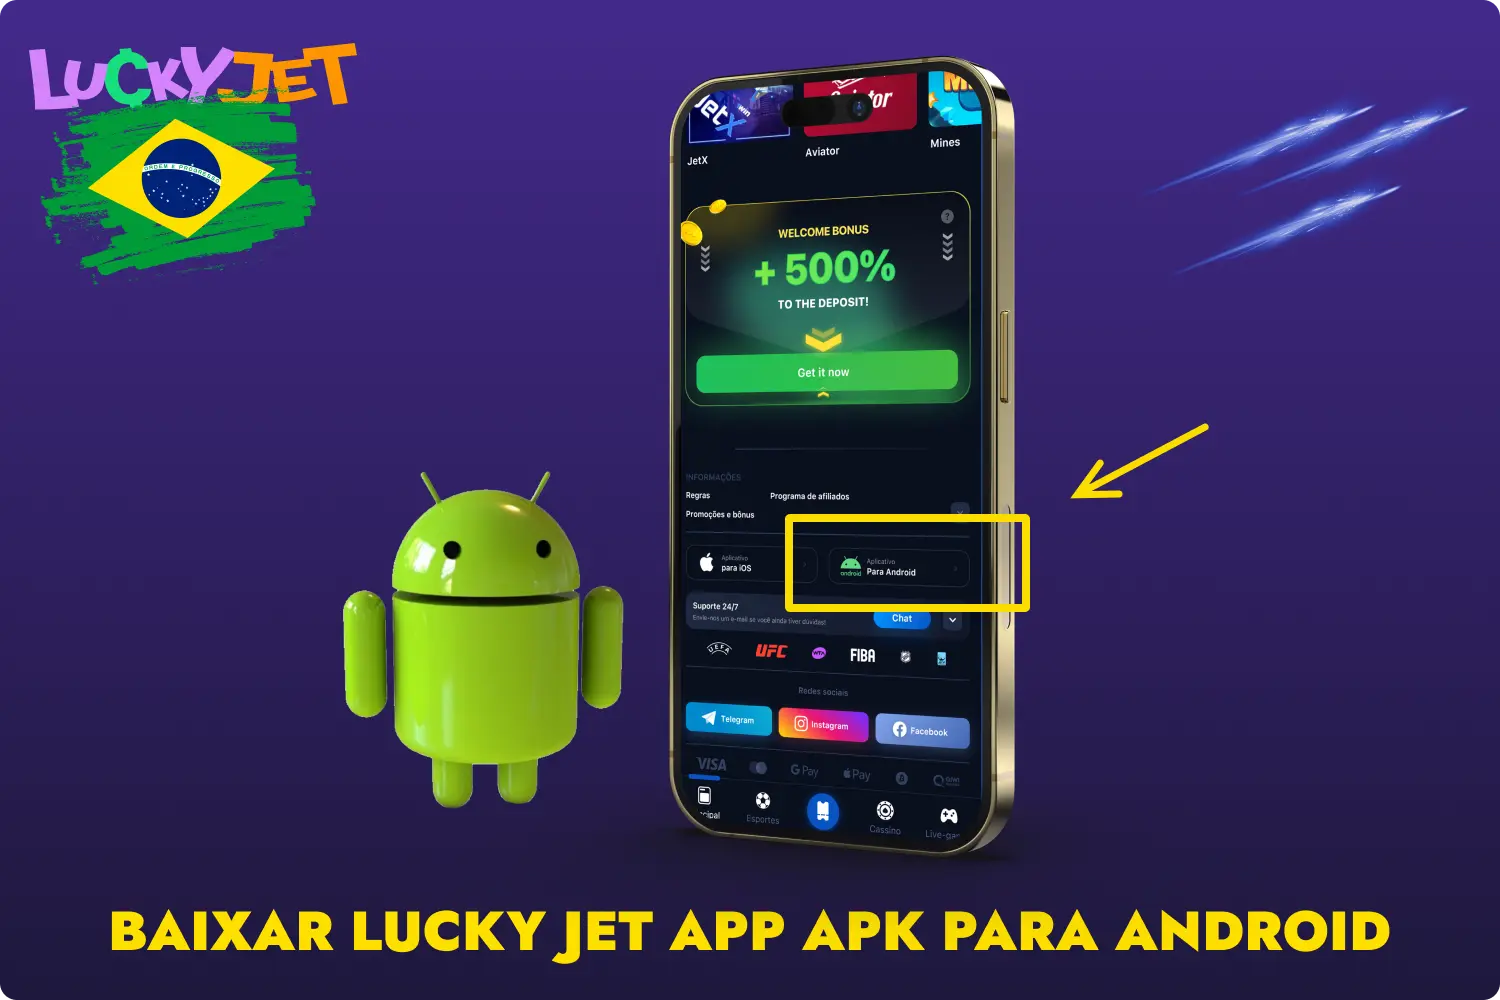 Depois de instalar a aplicação 1win para o sistema Android, os utilizadores brasileiros serão confrontados com uma vasta seleção de jogos de casino, incluindo o jogo Lucky Jet